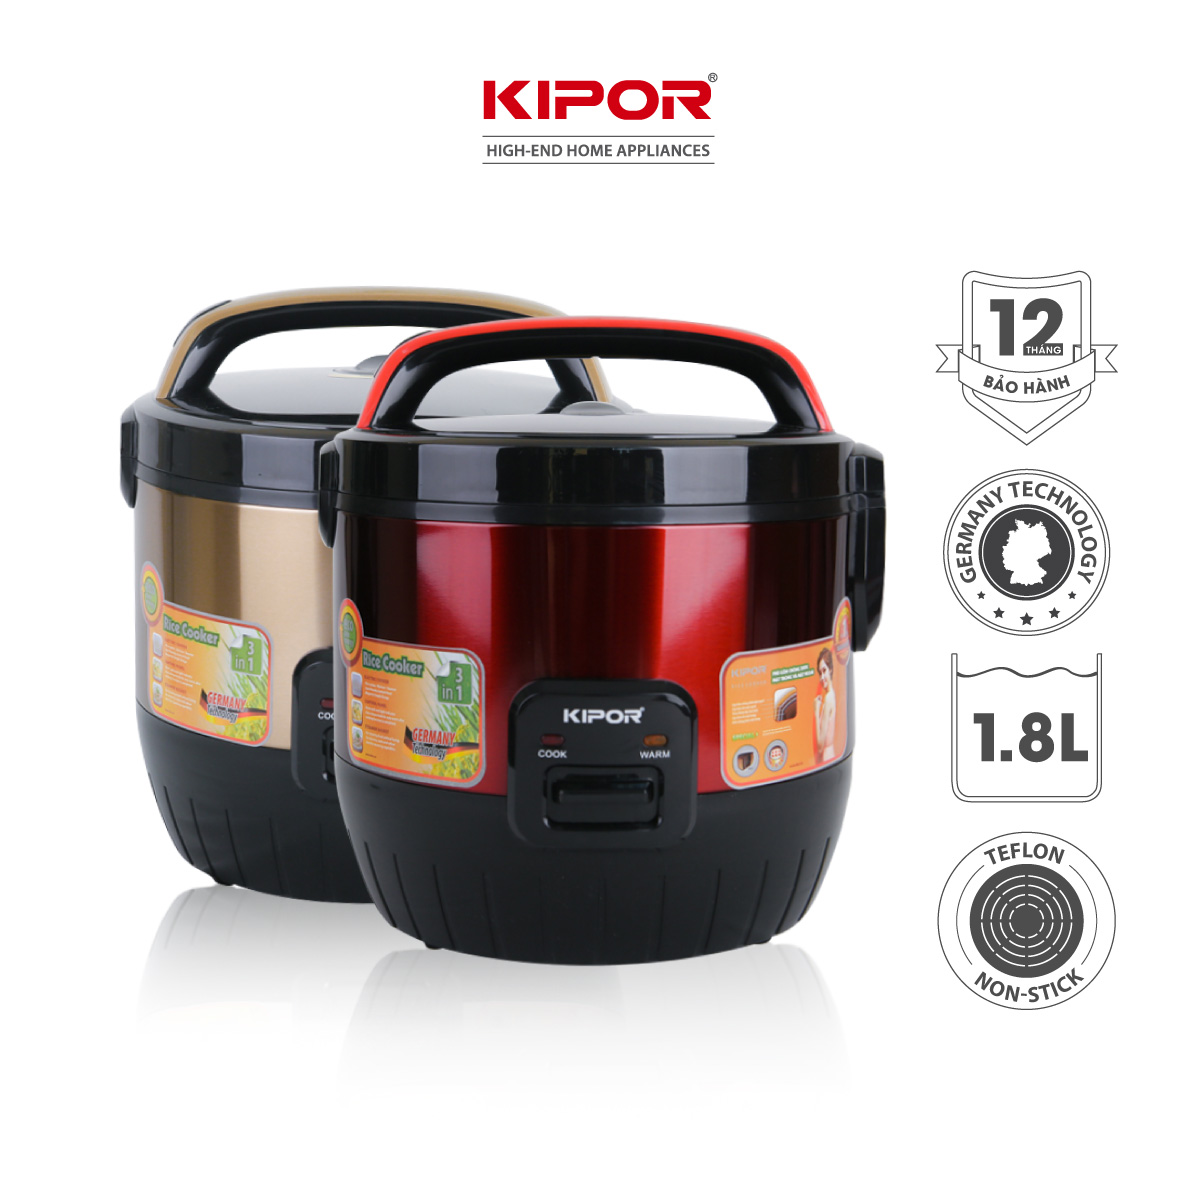 Nồi cơm điện KIPOR KP-N6518 - 1.8L - Nồi cơ dung tích lớn 4-6 người ăn, chống dính TEFLON 3mm 1Kg, màu đỏ/vàng đa năng -Hàng chính hãng- Bảo hành tại nhà 12 tháng